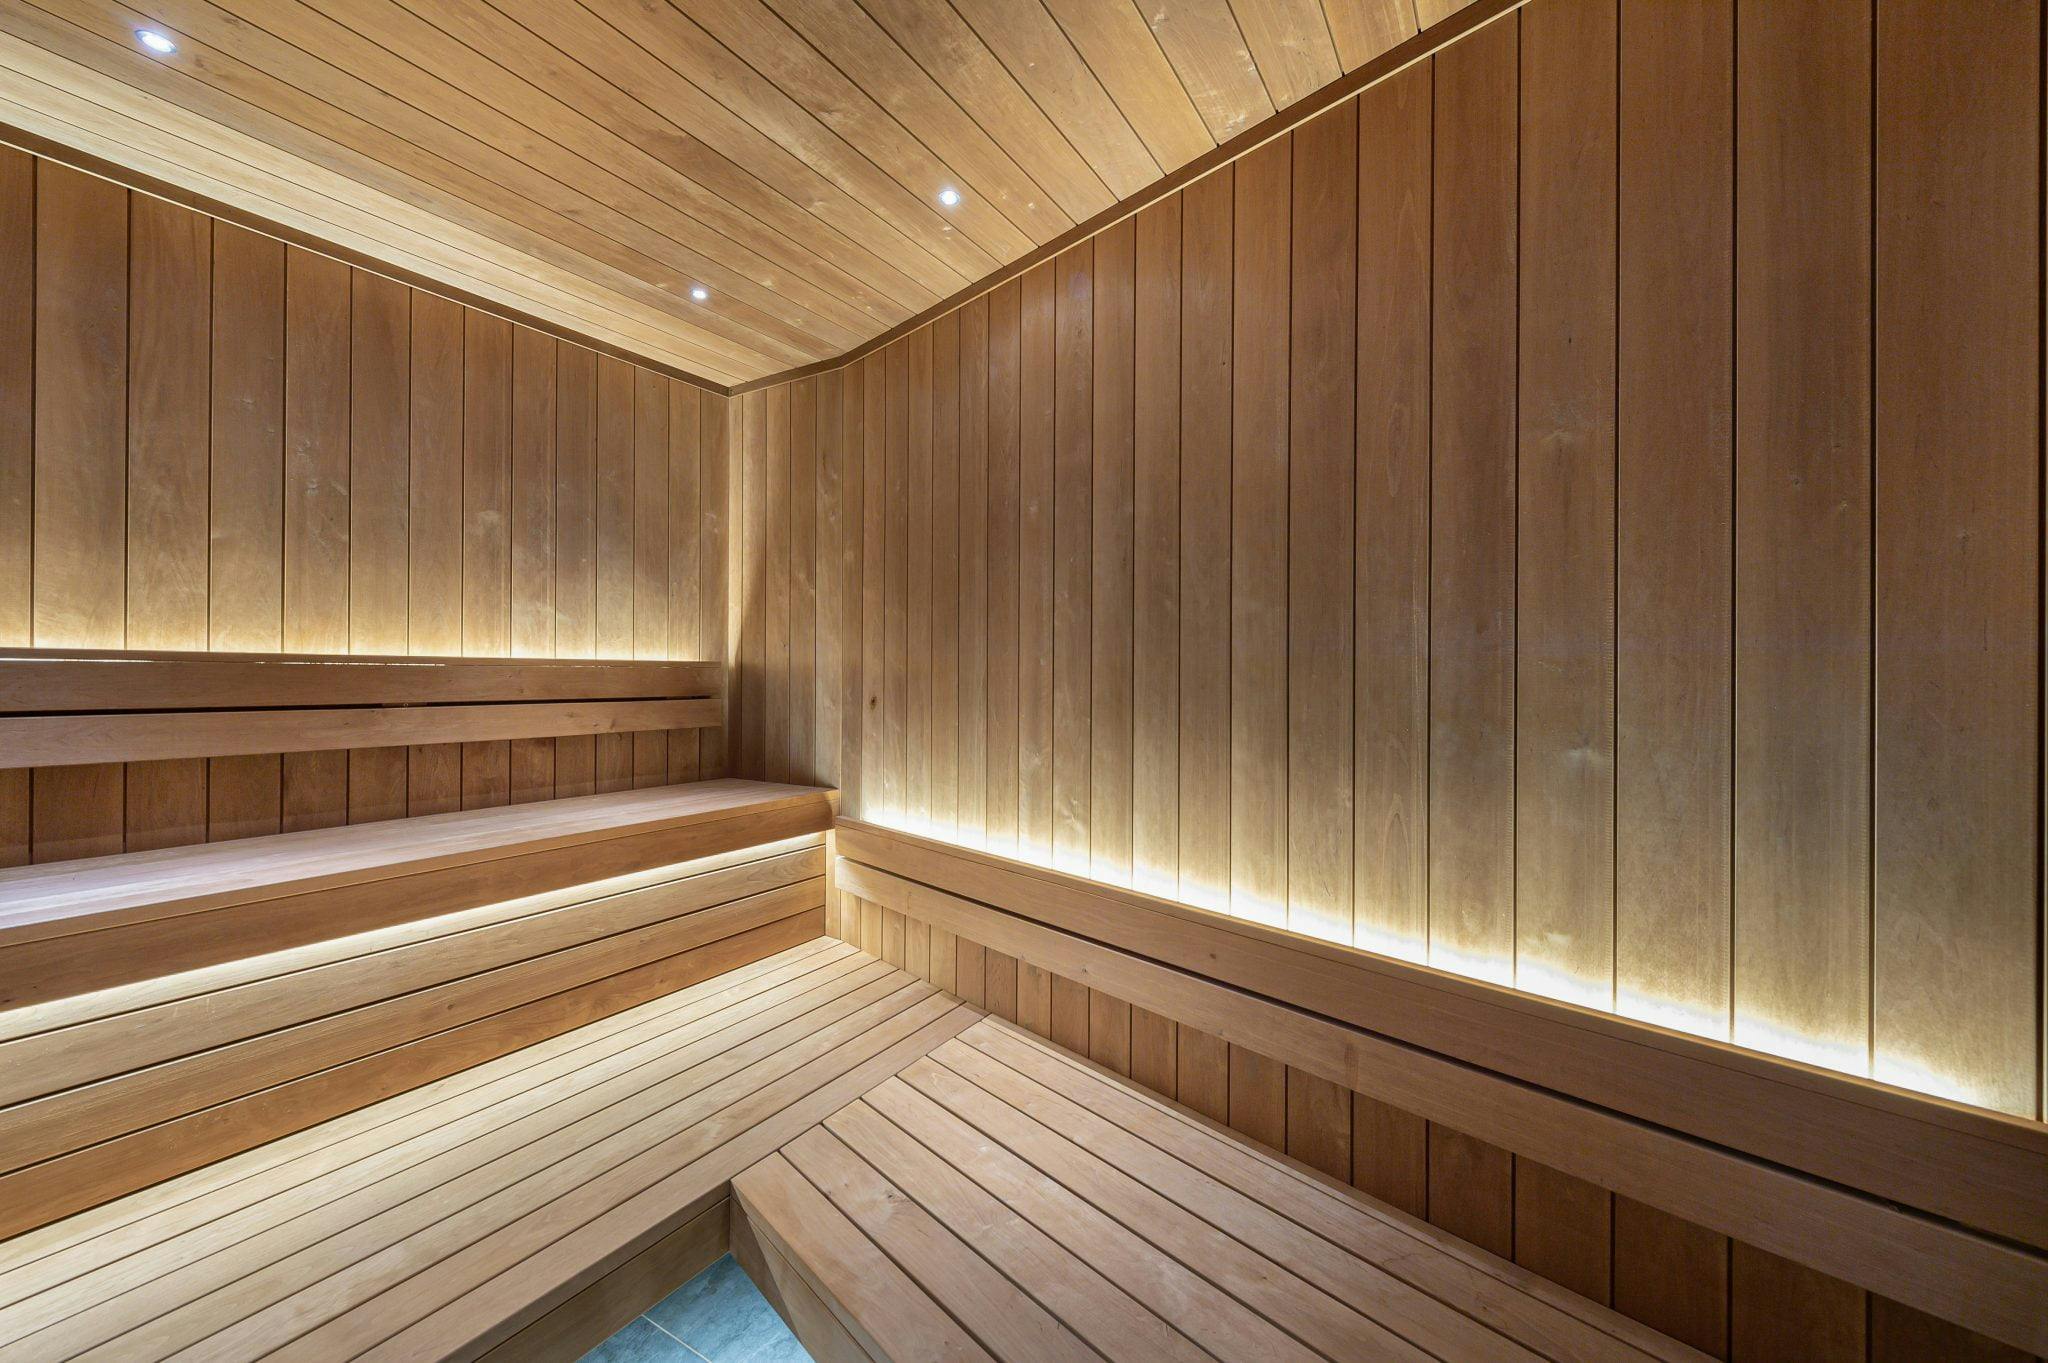 illuminated wooden sauna